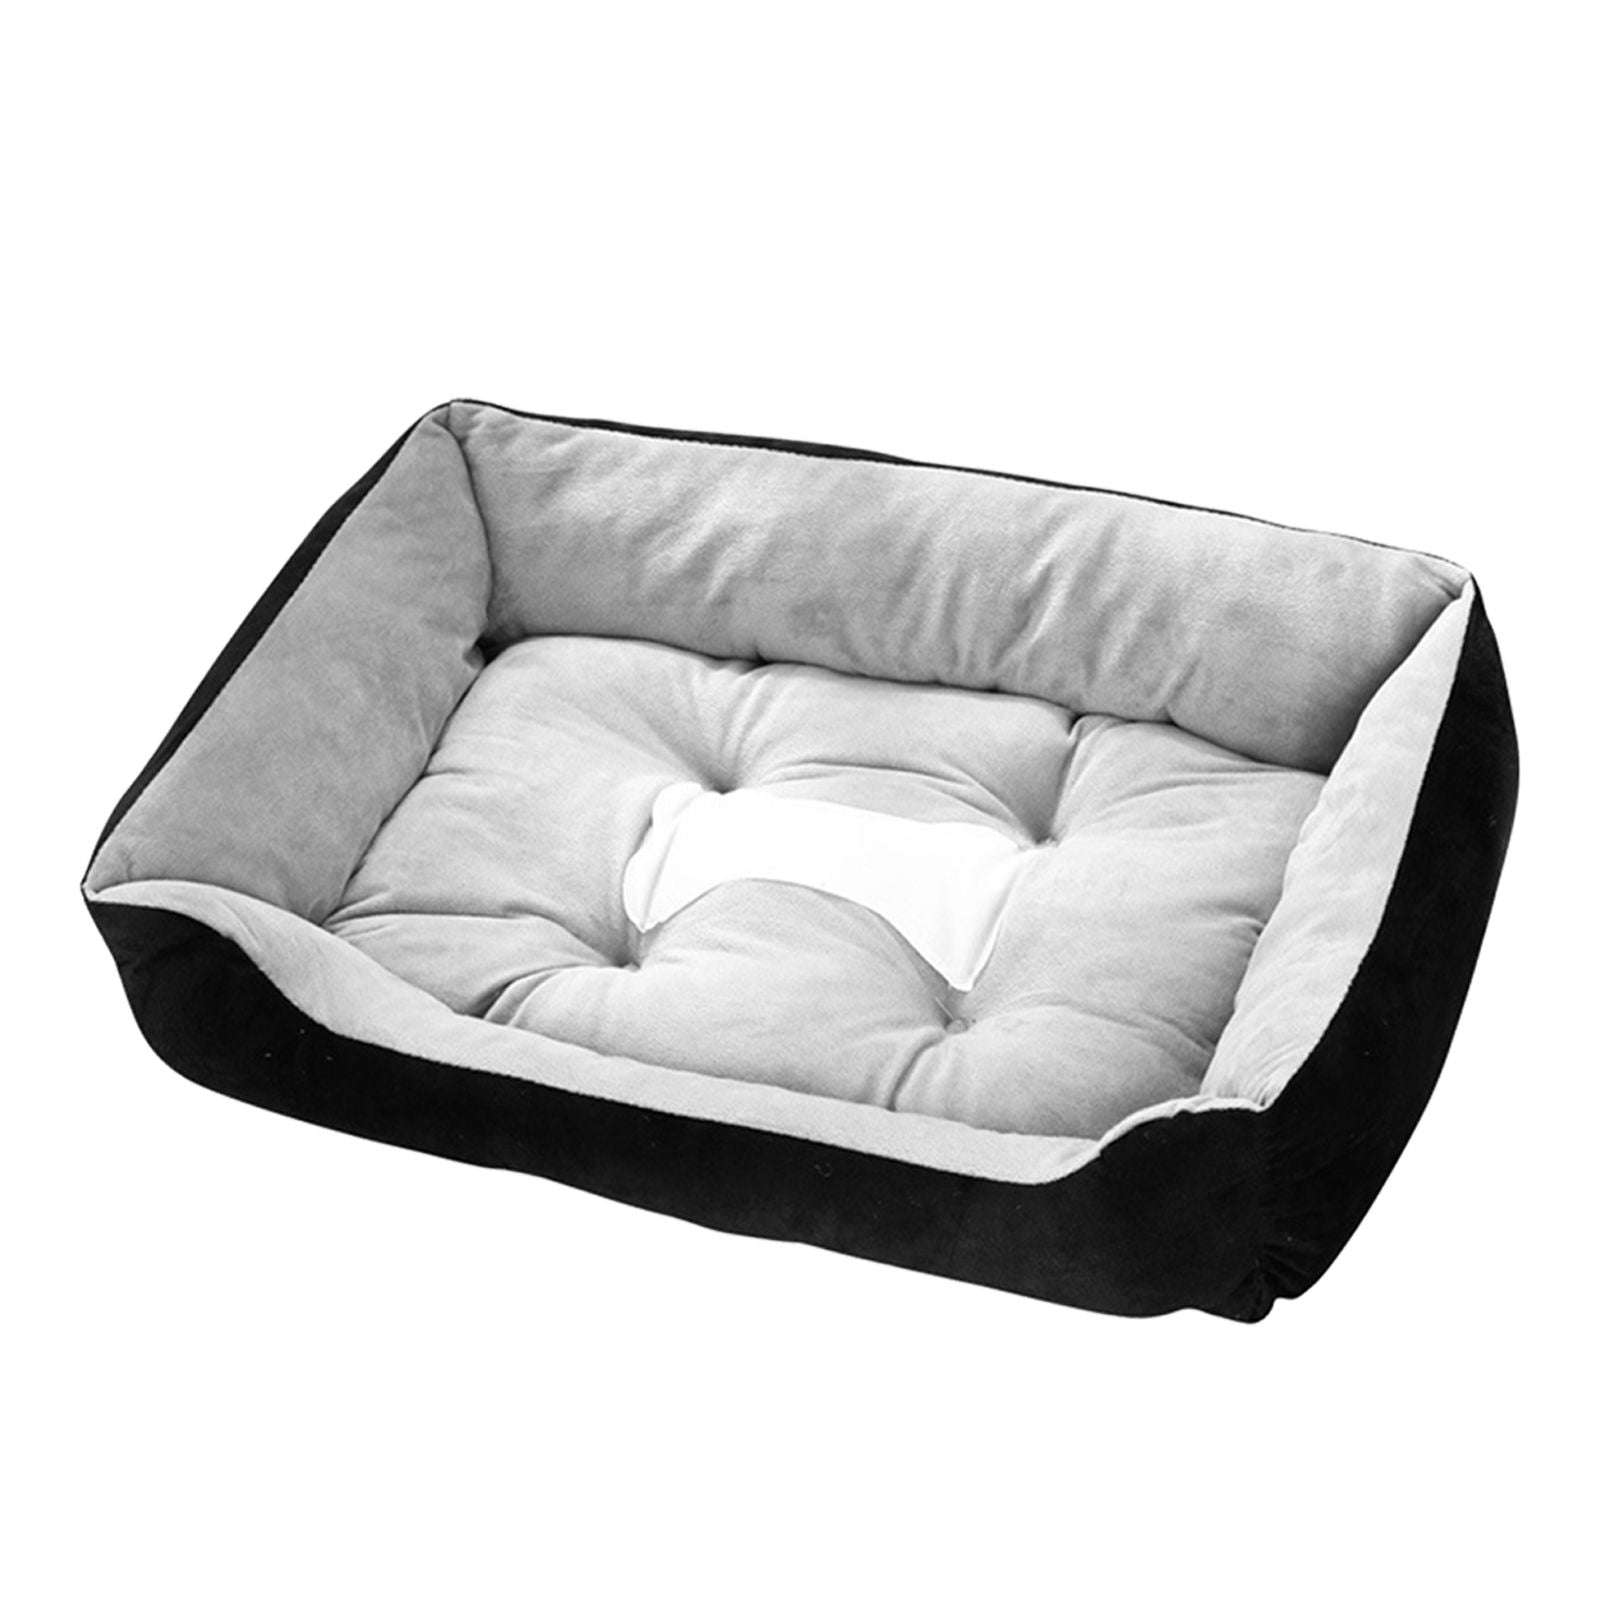 Dog Calming Bed Pet Warm Soft Washable Portable Large Medium sized Dog Mat XL